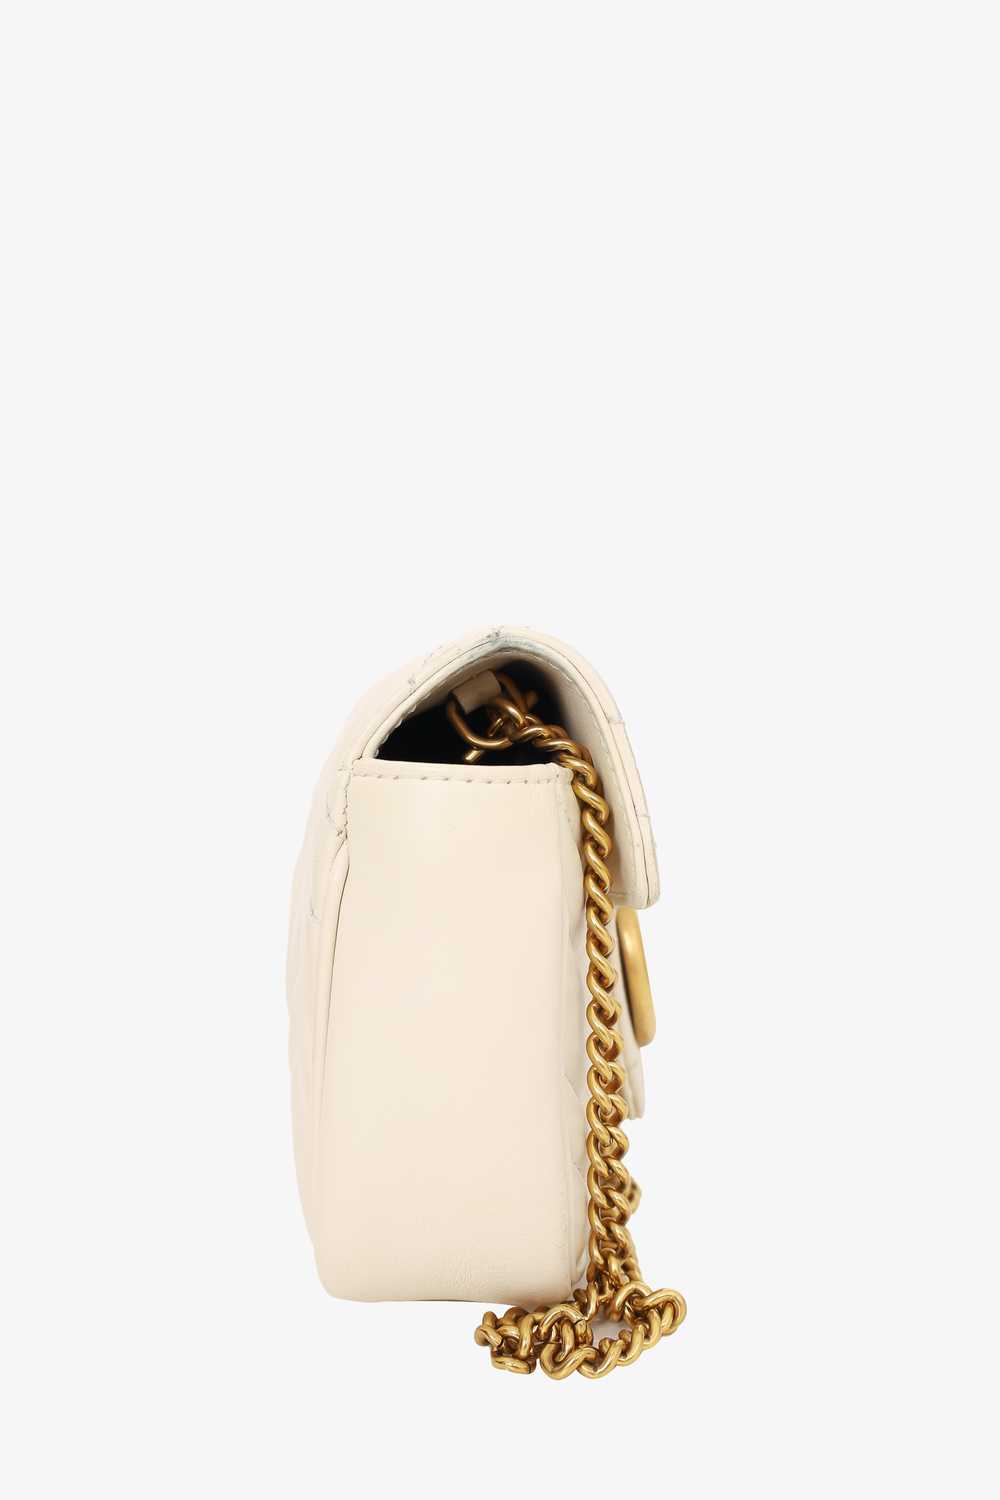 Gucci White Leather Super Mini GG Marmont Crossbo… - image 3